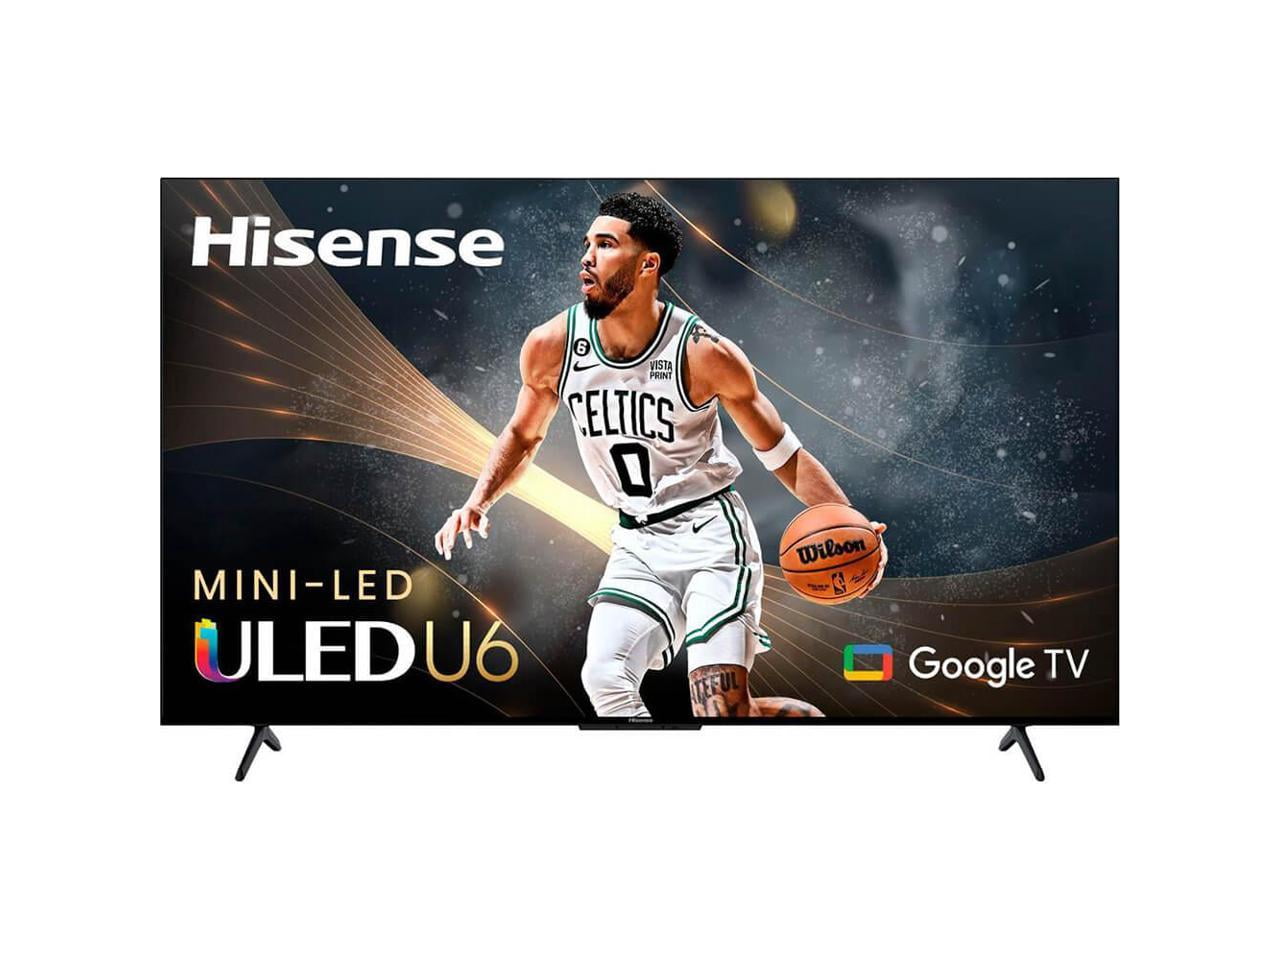 Hisense 75 inch Mini LED QLED 4K UHD Smart Google TV